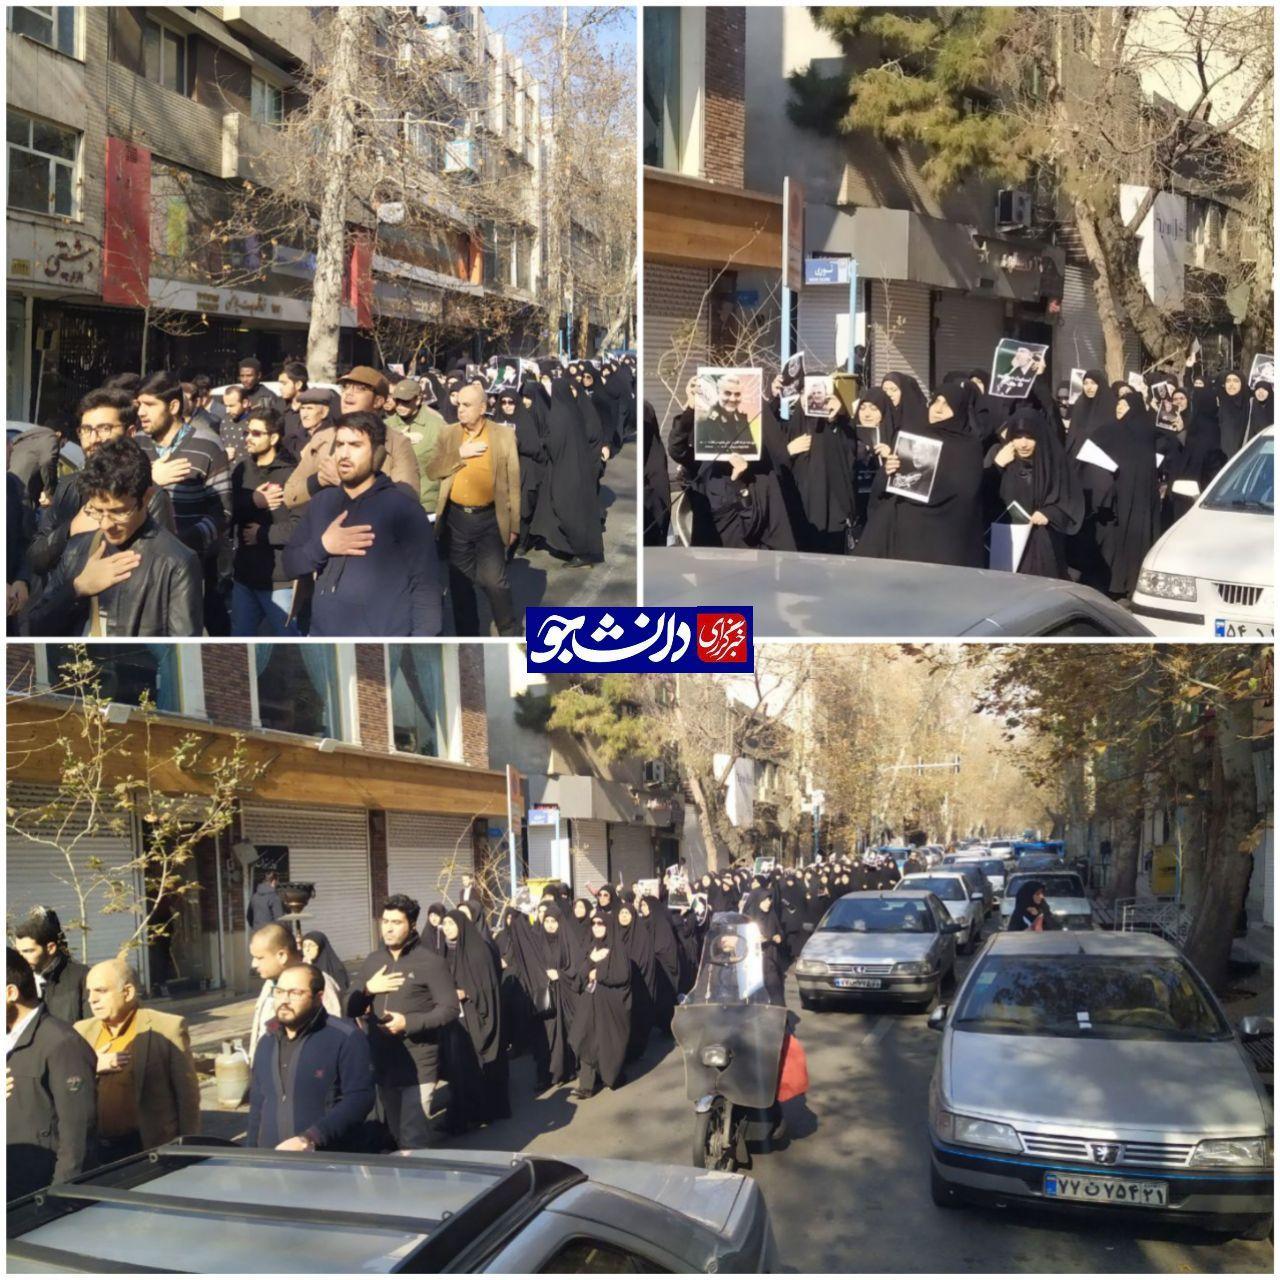 حرکت دانشجویان به سمت بیت مقام معظم رهبری برای عرض تسلیت شهادت سردار سلیمانی